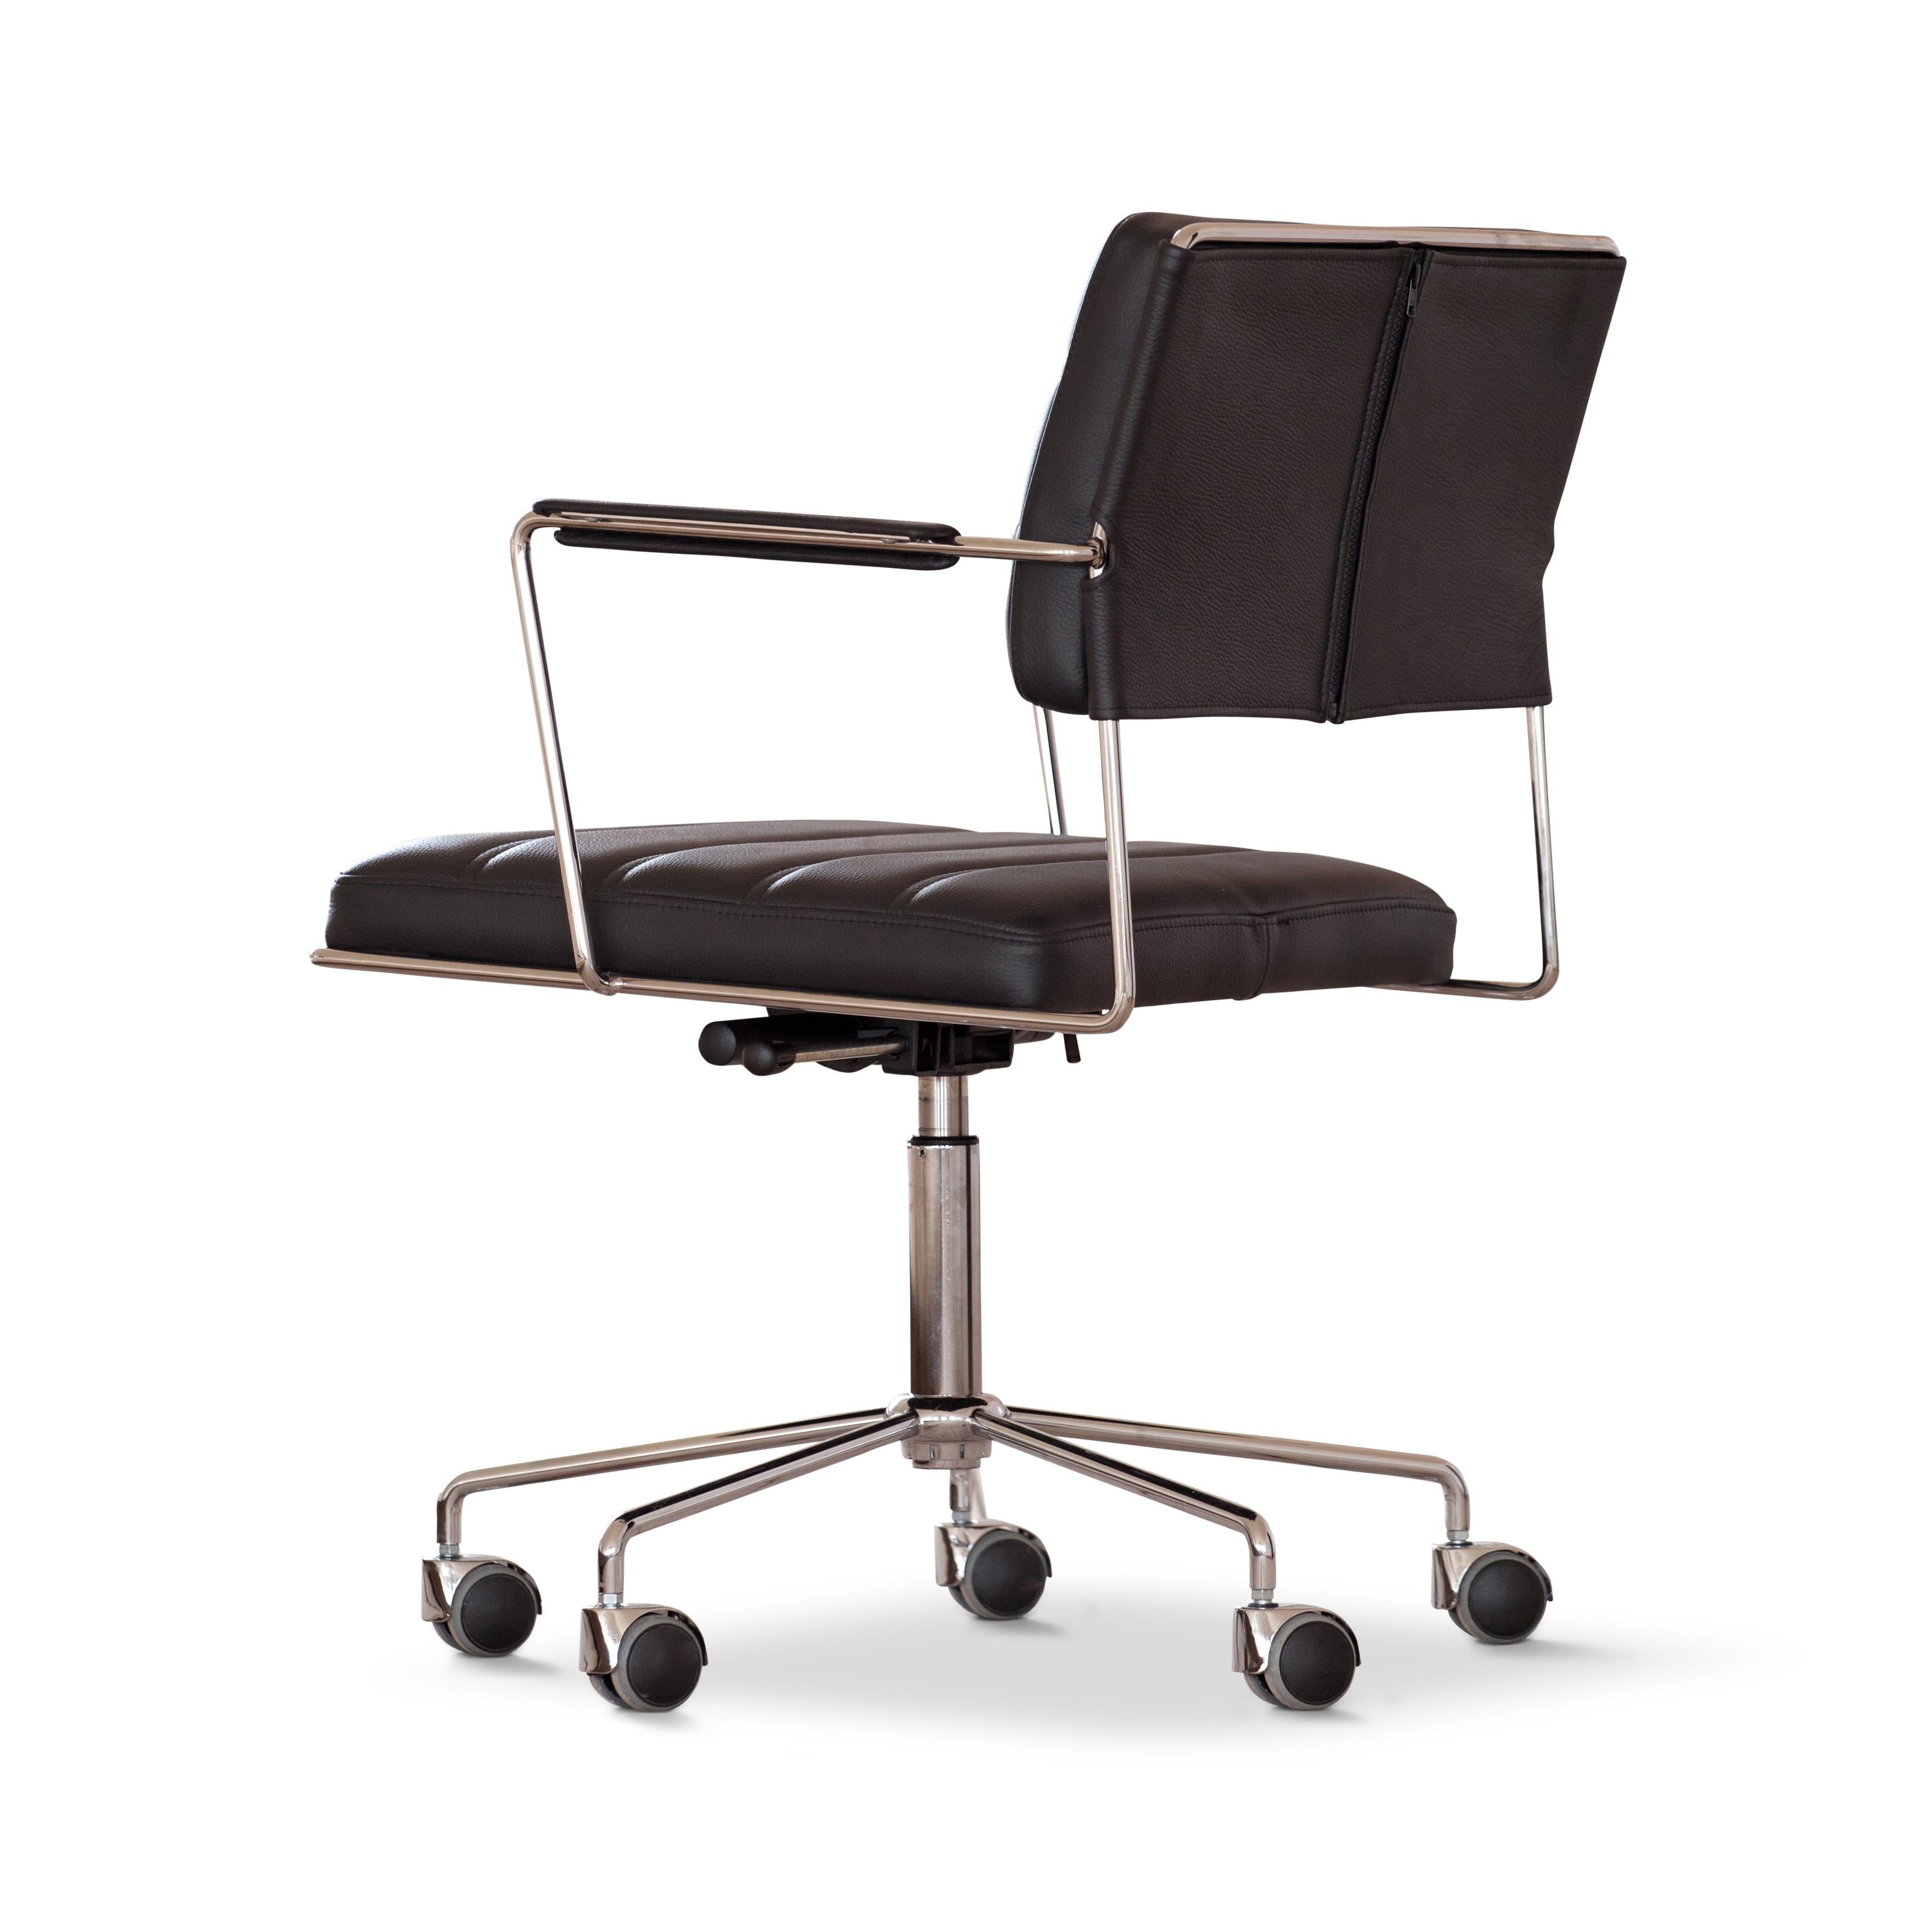 La chaise tme est une chaise de conférence dynamique et confortable conçue par Henrik Tengler en 2012. La chaise a été conçue à dessein pour ne pas suivre les tendances actuelles. Son esthétique s'apparente plutôt au fonctionnalisme cosmopolite de